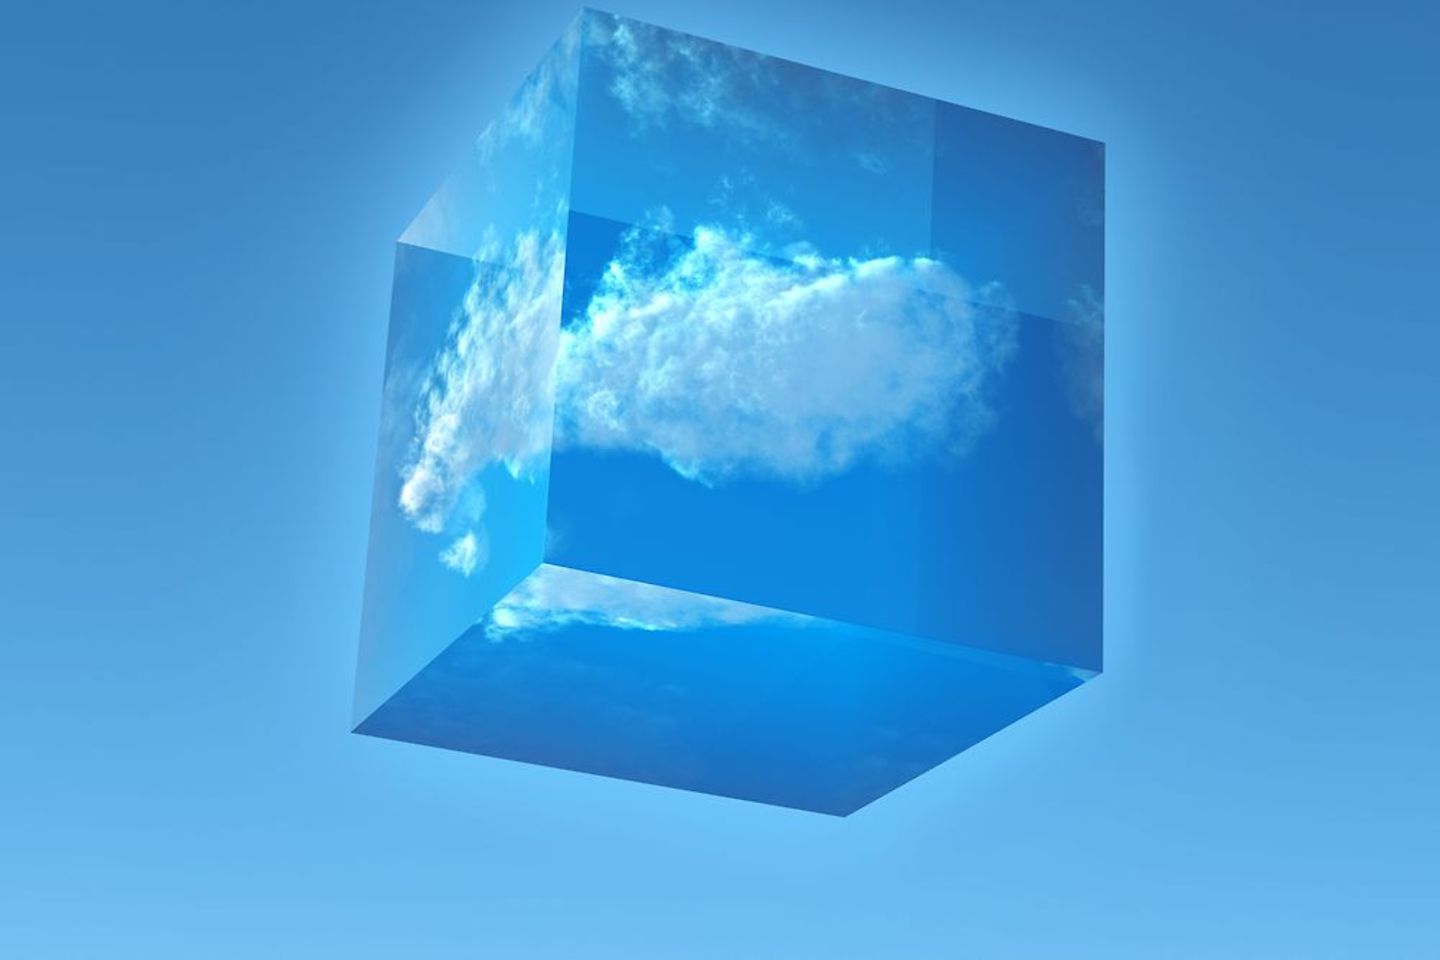 Cubo transparente con una nube en su interior